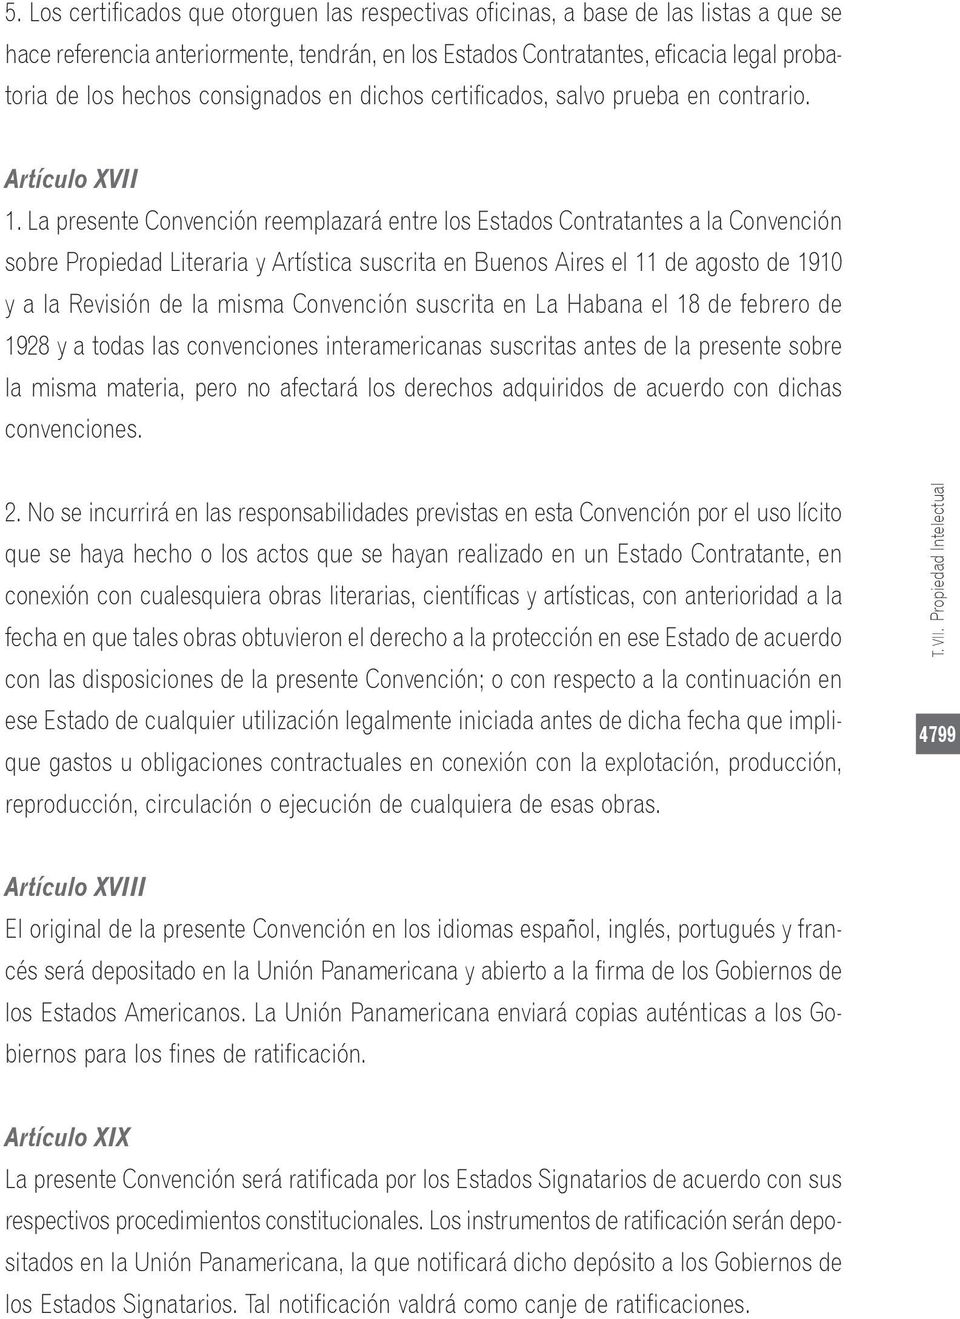 La presente Convención reemplazará entre los Estados Contratantes a la Convención sobre Propiedad Literaria y Artística suscrita en Buenos Aires el 11 de agosto de 1910 y a la Revisión de la misma